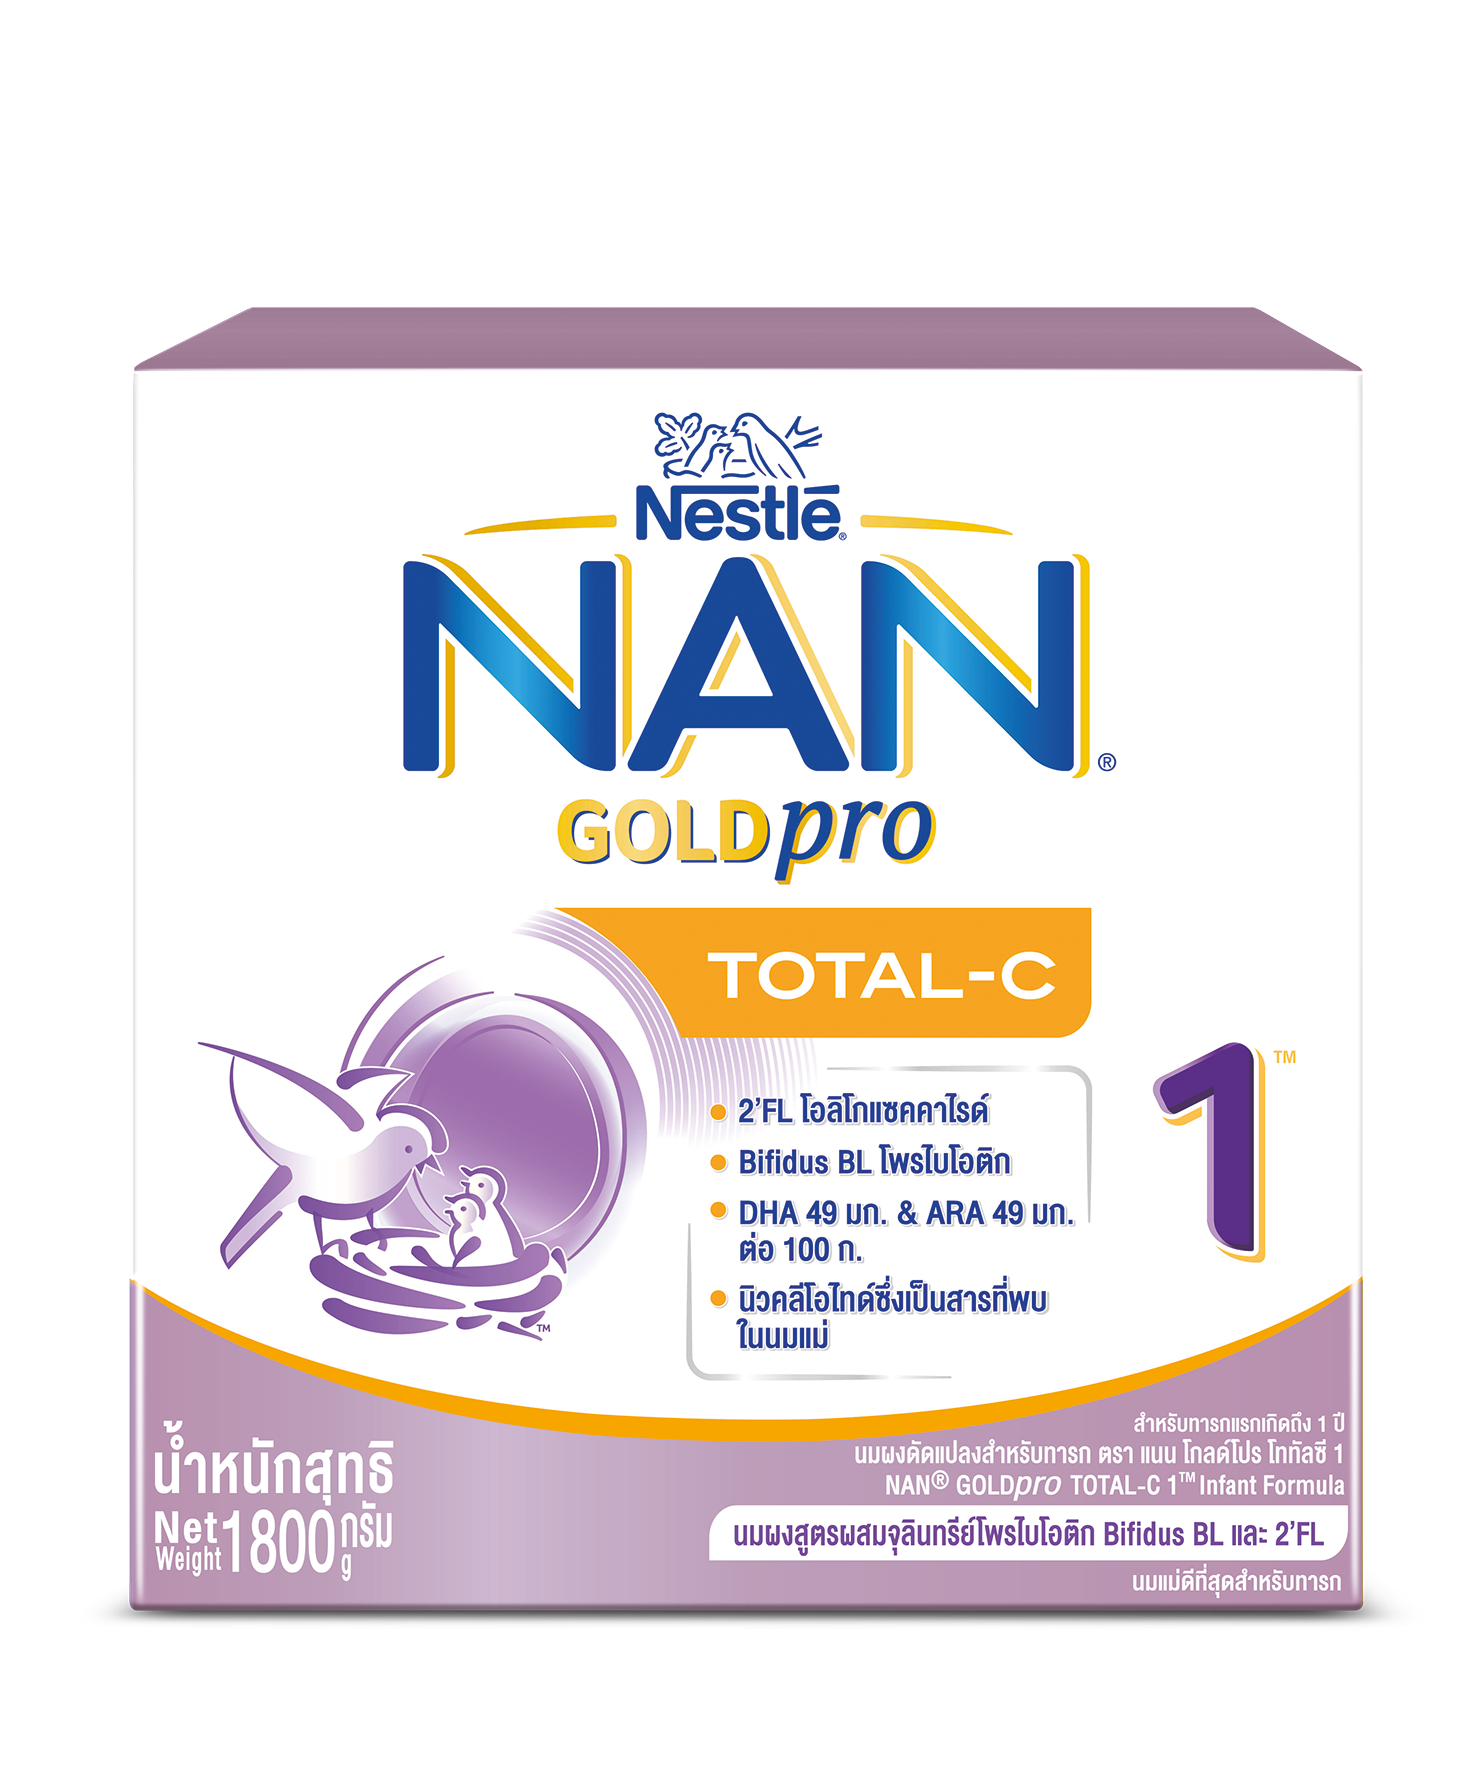 เกี่ยวกับสินค้า [นมผง] NAN GOLDpro นมผง แนน โกลด์โปร โททัลซี 1 สูตร 1  1,800 กรัม (2 กล่อง) นมผงสำหรับเด็กแรกเกิด - 1 ปี